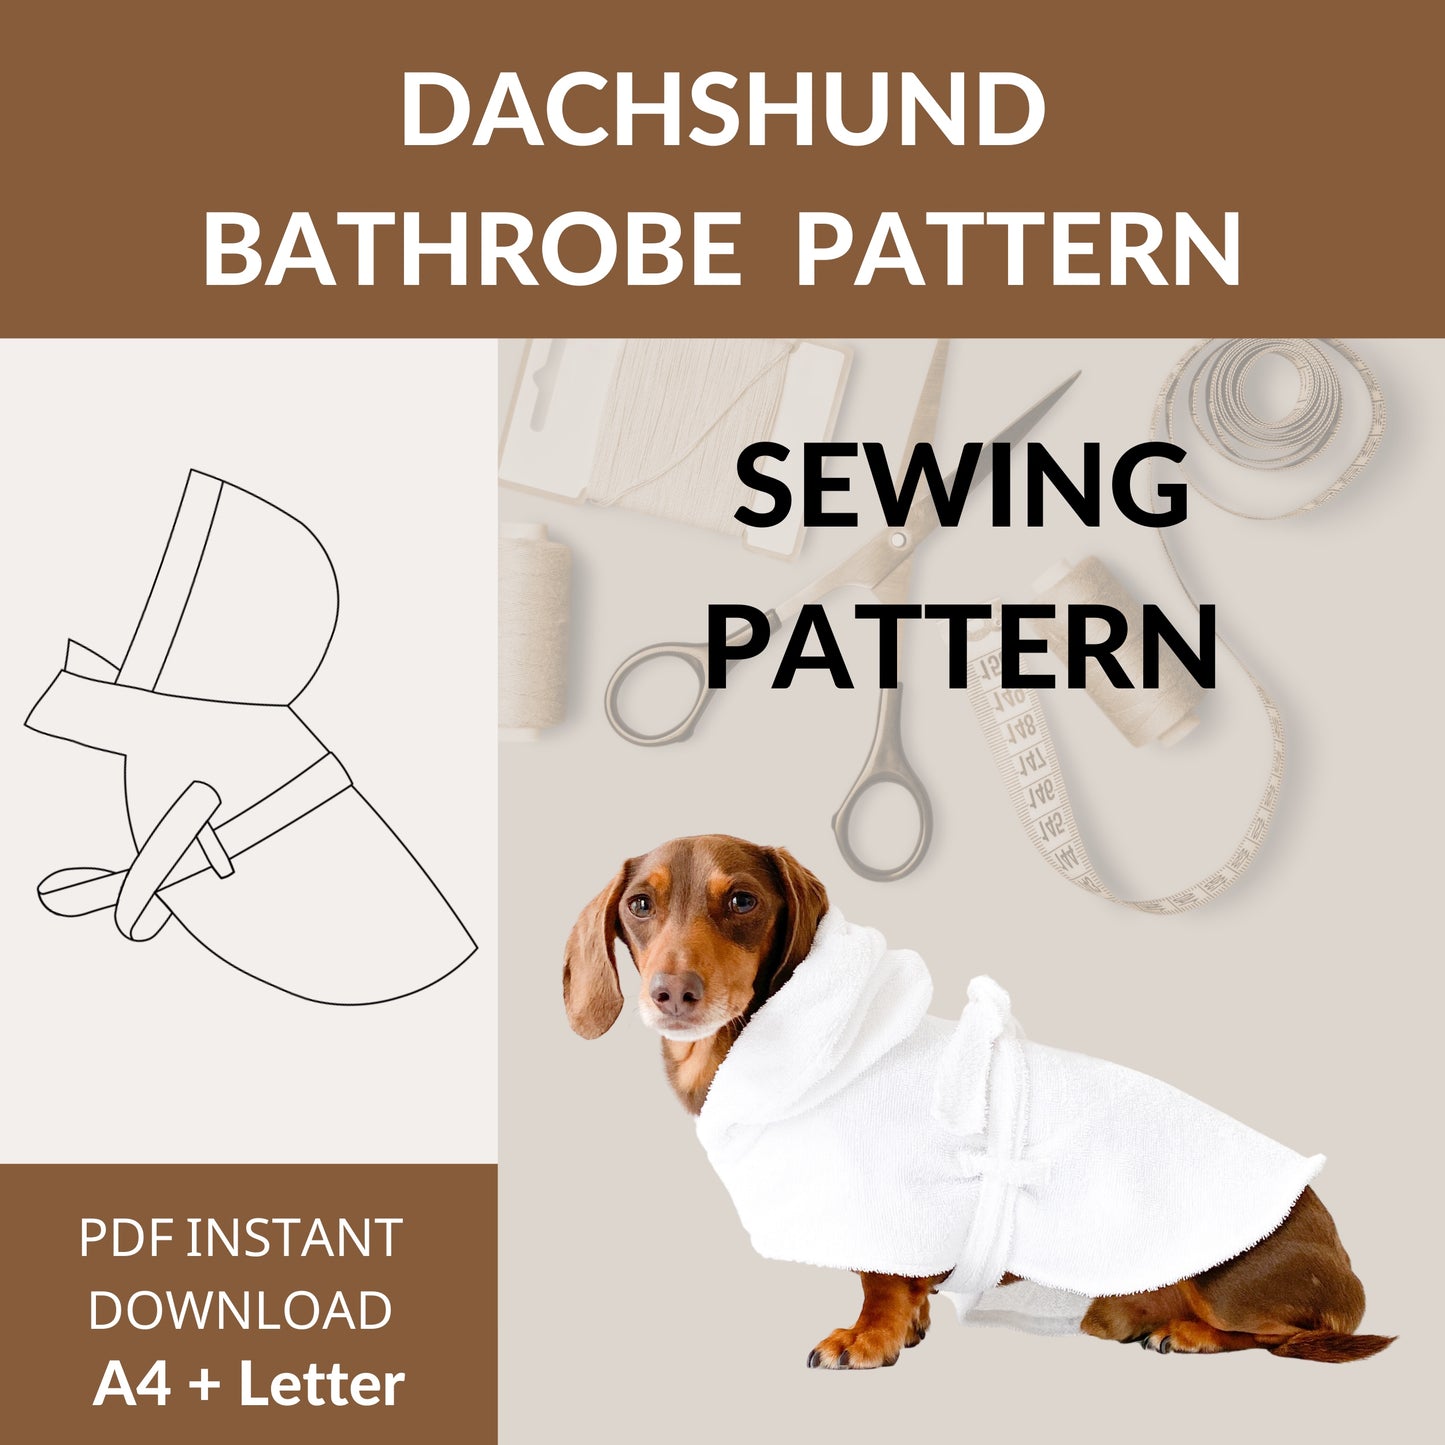 Dachshund Bathrobe Sewing Pattern